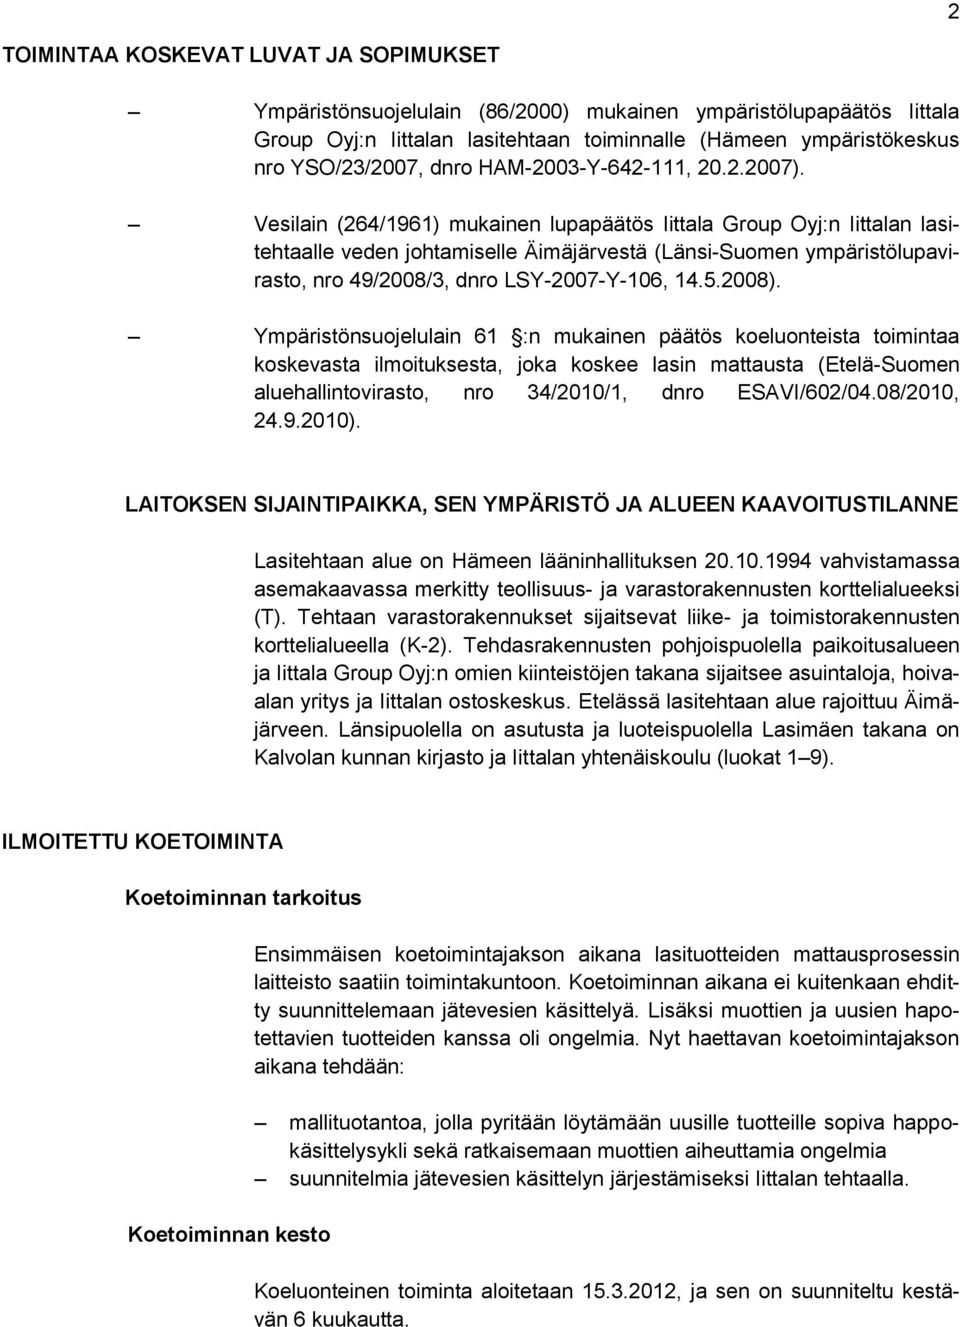 Vesilain (264/1961) mukainen lupapäätös Iittala Group Oyj:n Iittalan lasitehtaalle veden johtamiselle Äimäjärvestä (Länsi-Suomen ympäristölupavirasto, nro 49/2008/3, dnro LSY-2007-Y-106, 14.5.2008).